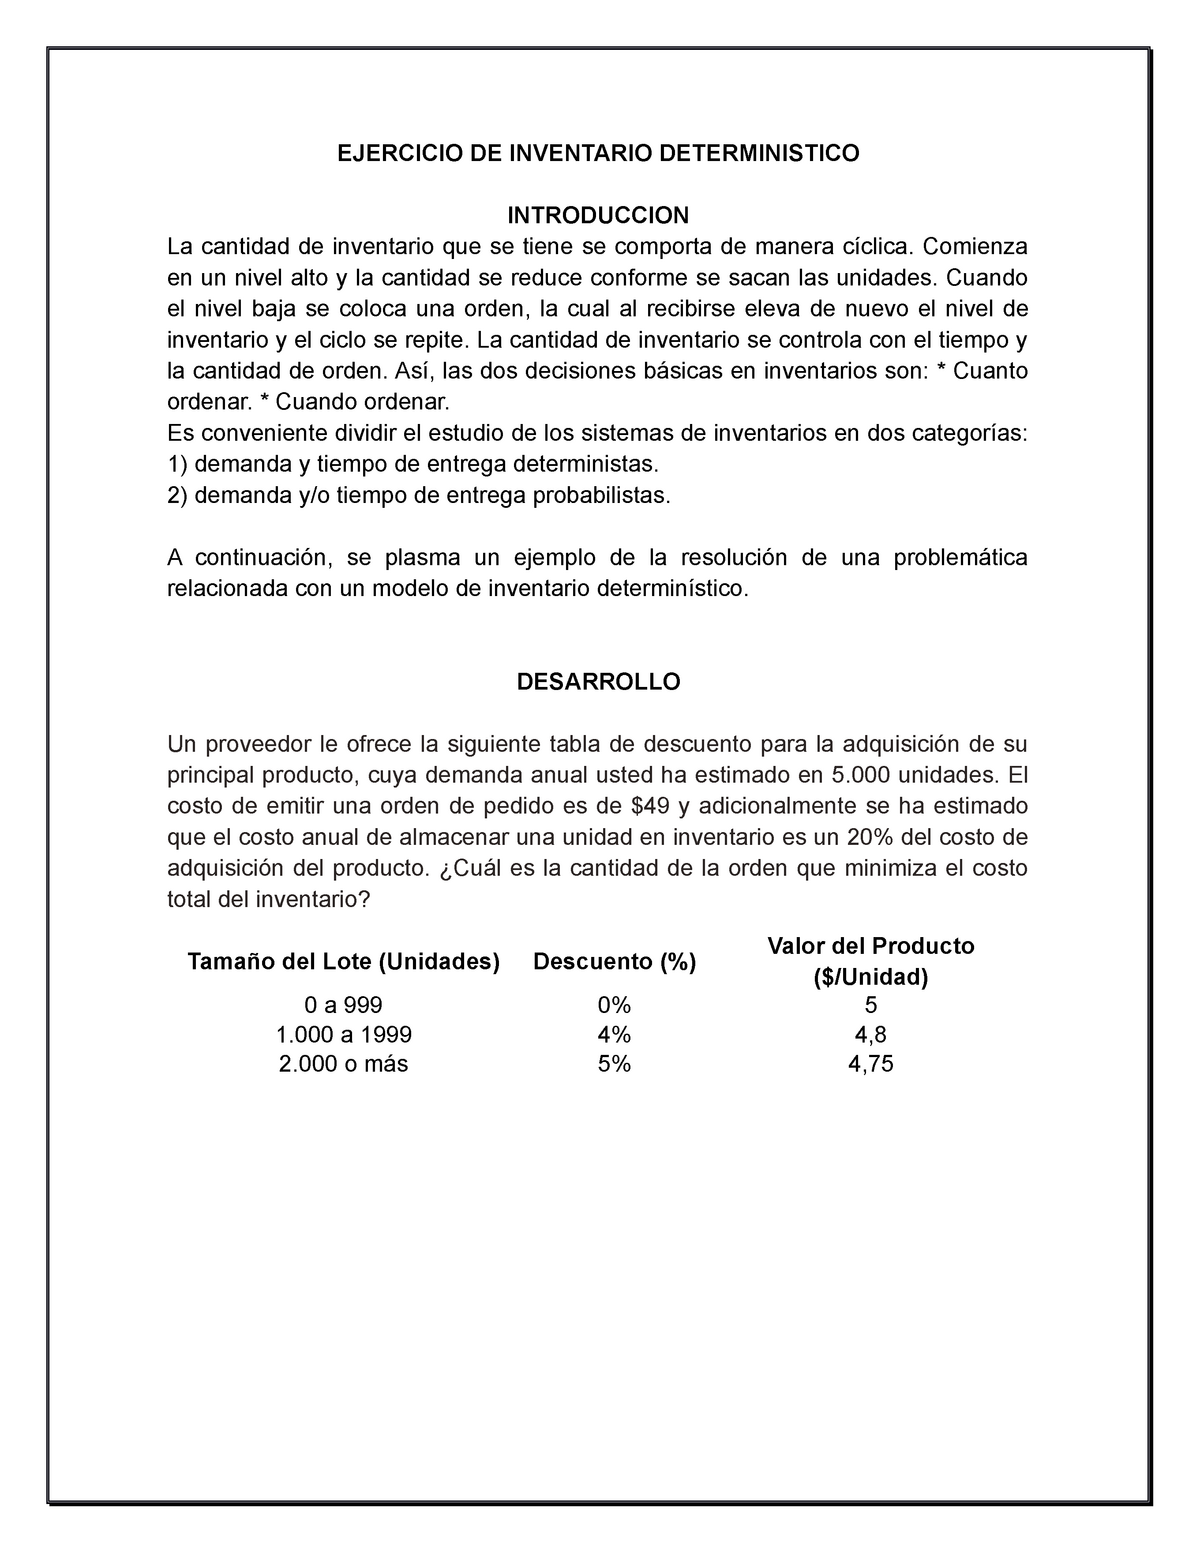 Inventario Deterministico - EJERCICIO DE INVENTARIO DETERMINISTICO  INTRODUCCION La cantidad de - Studocu